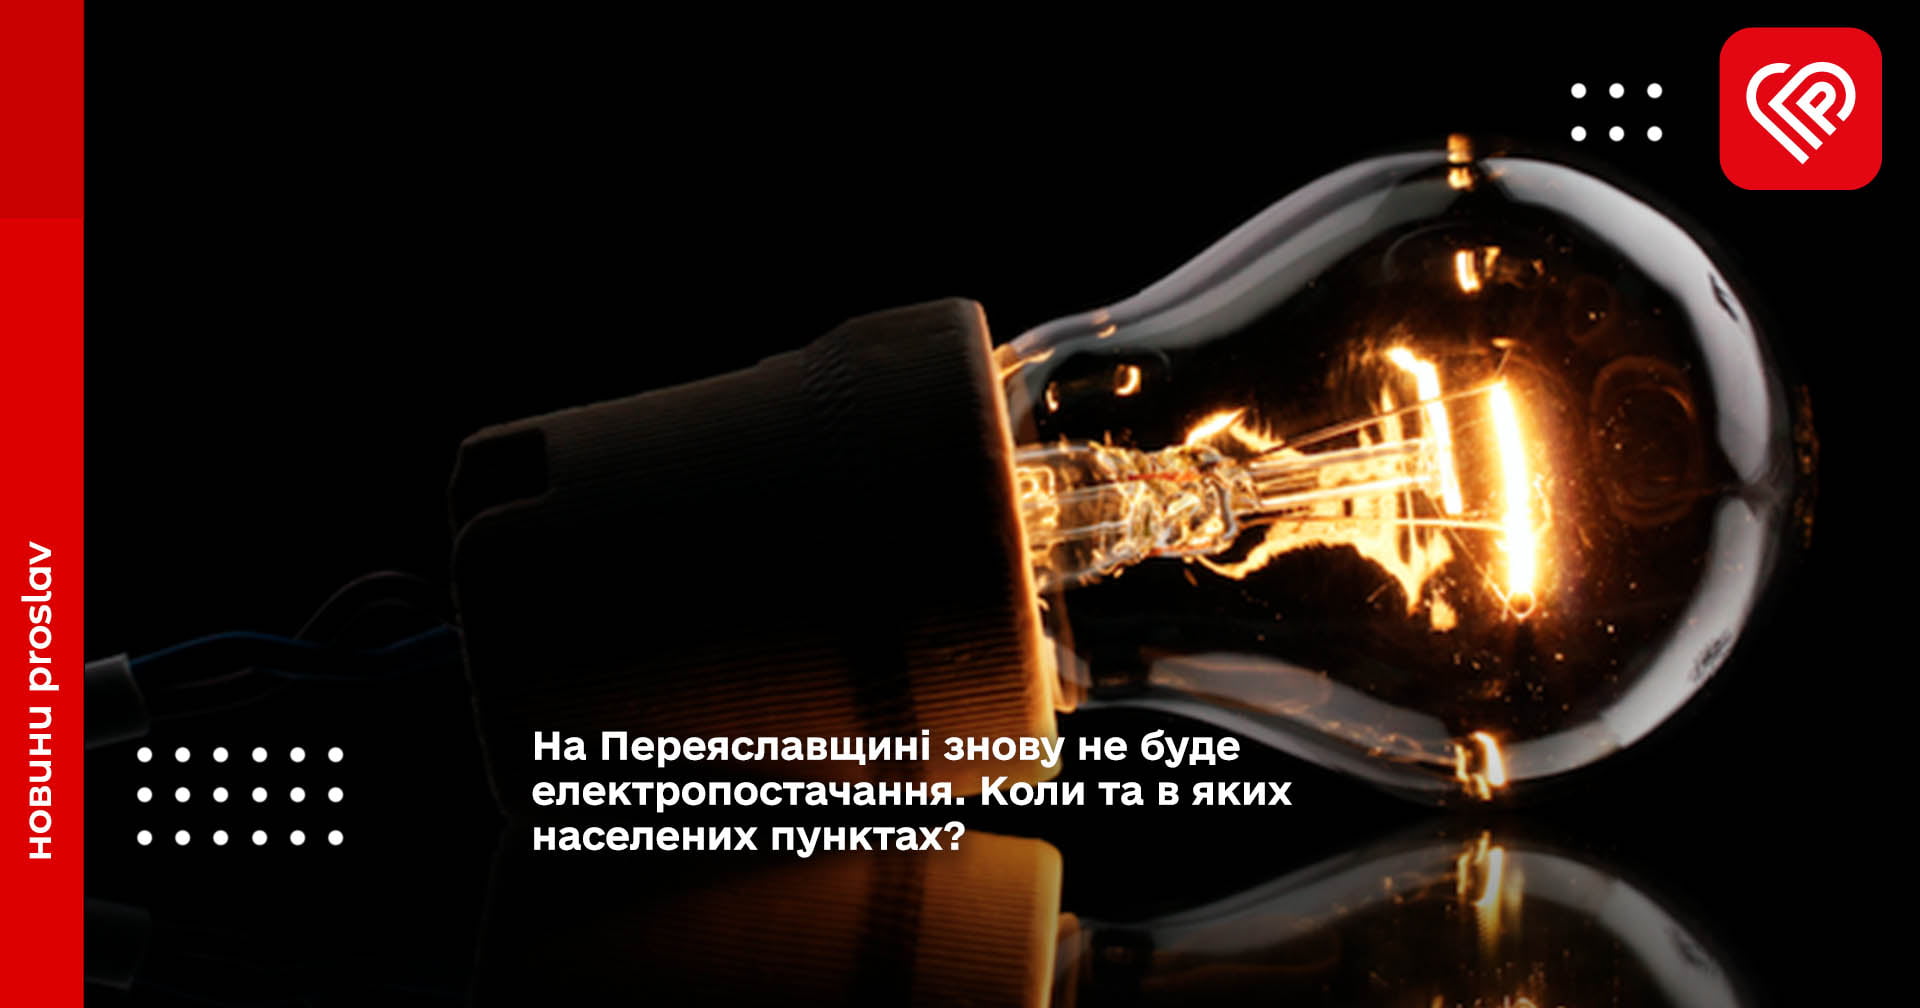 На Переяславщині знову не буде електропостачання. Коли та в яких населених пунктах?